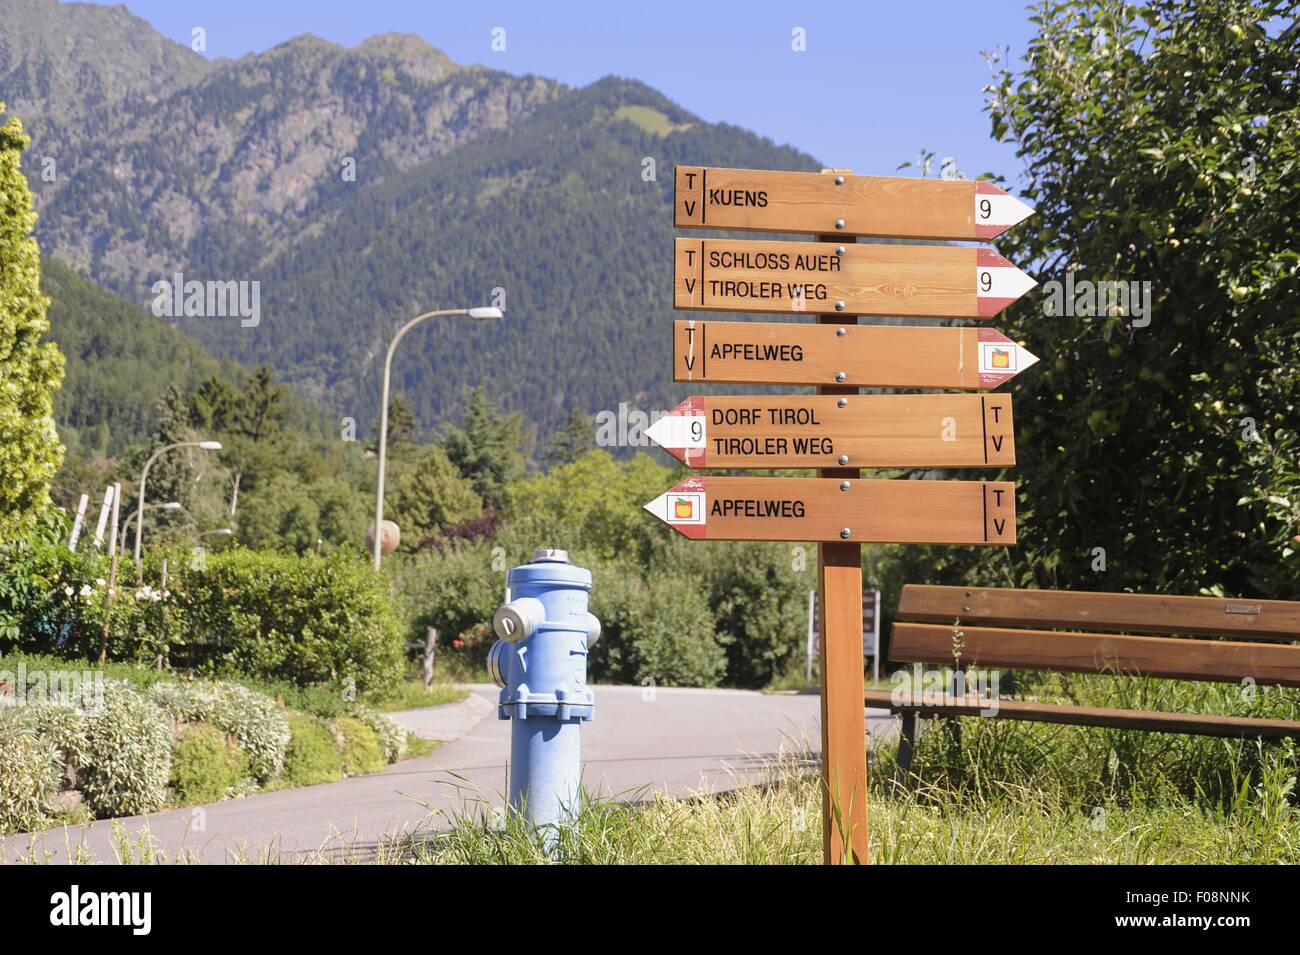 Alto Adige (Italia settentrionale), in lingua tedesca segnaletica turistica nel paese di Tirolo presso Merano Foto Stock